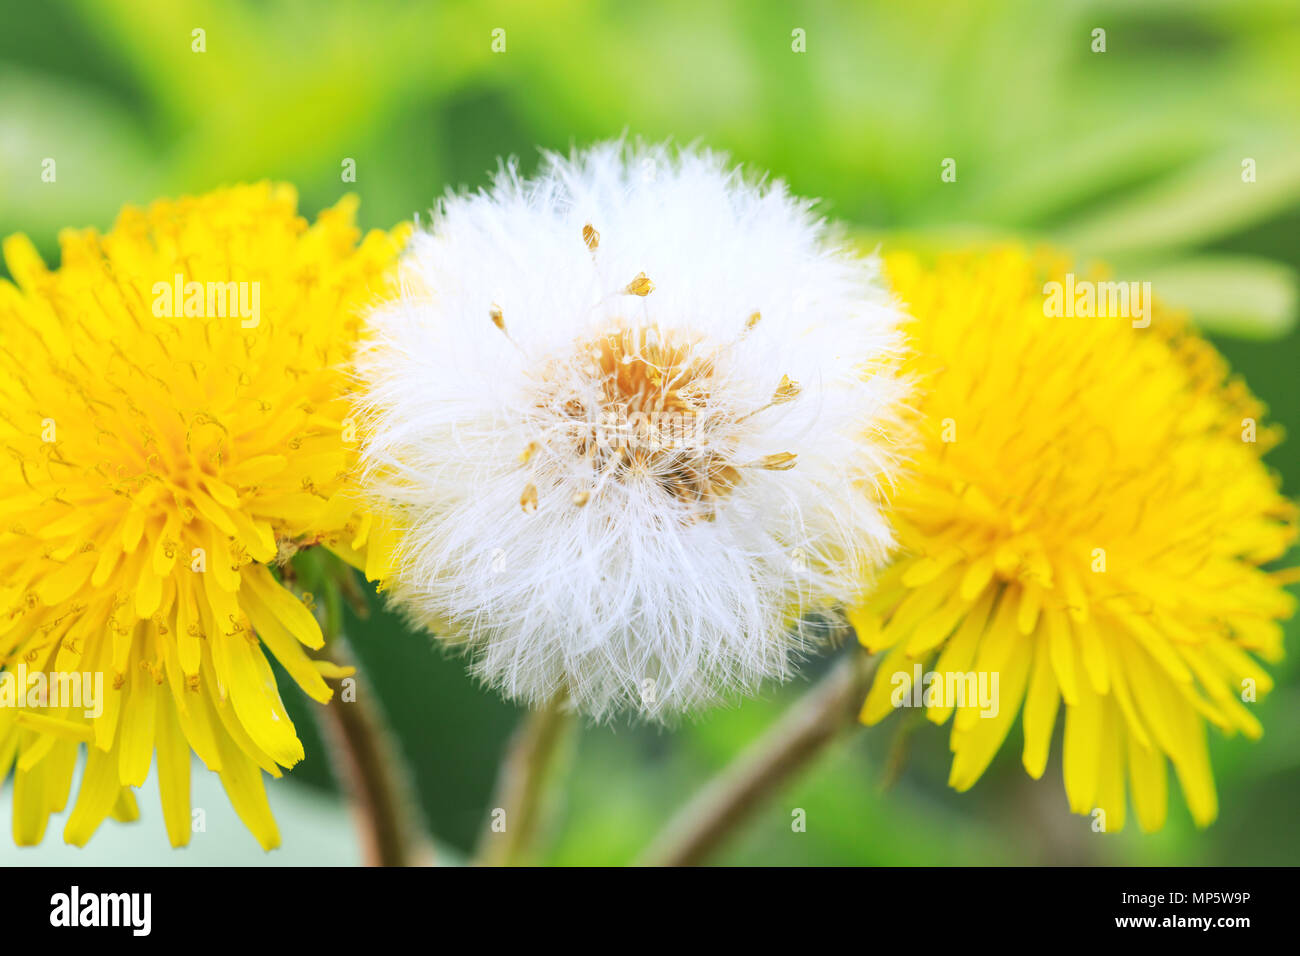 Un parachute de pissenlit ballon entre deux autres fleurs de pissenlit jaune. Beau fond pissenlit en blanc et couleurs jaunes composition florale. Banque D'Images